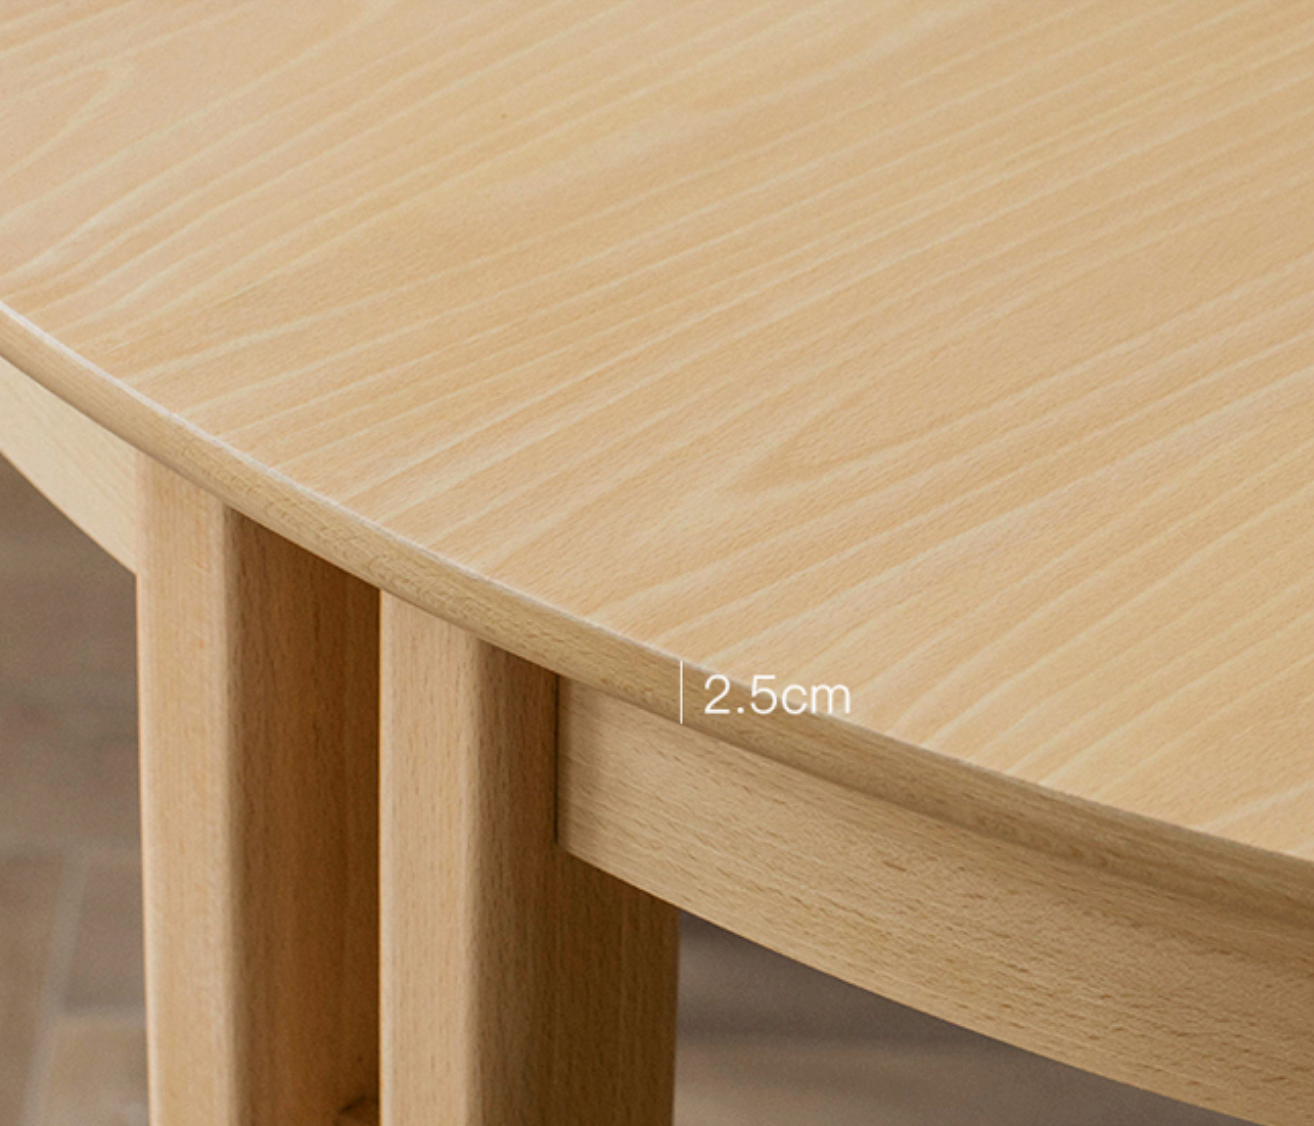 JOY LUCK TABLE  Ziinlife Modern Design Furniture Hong Kong  